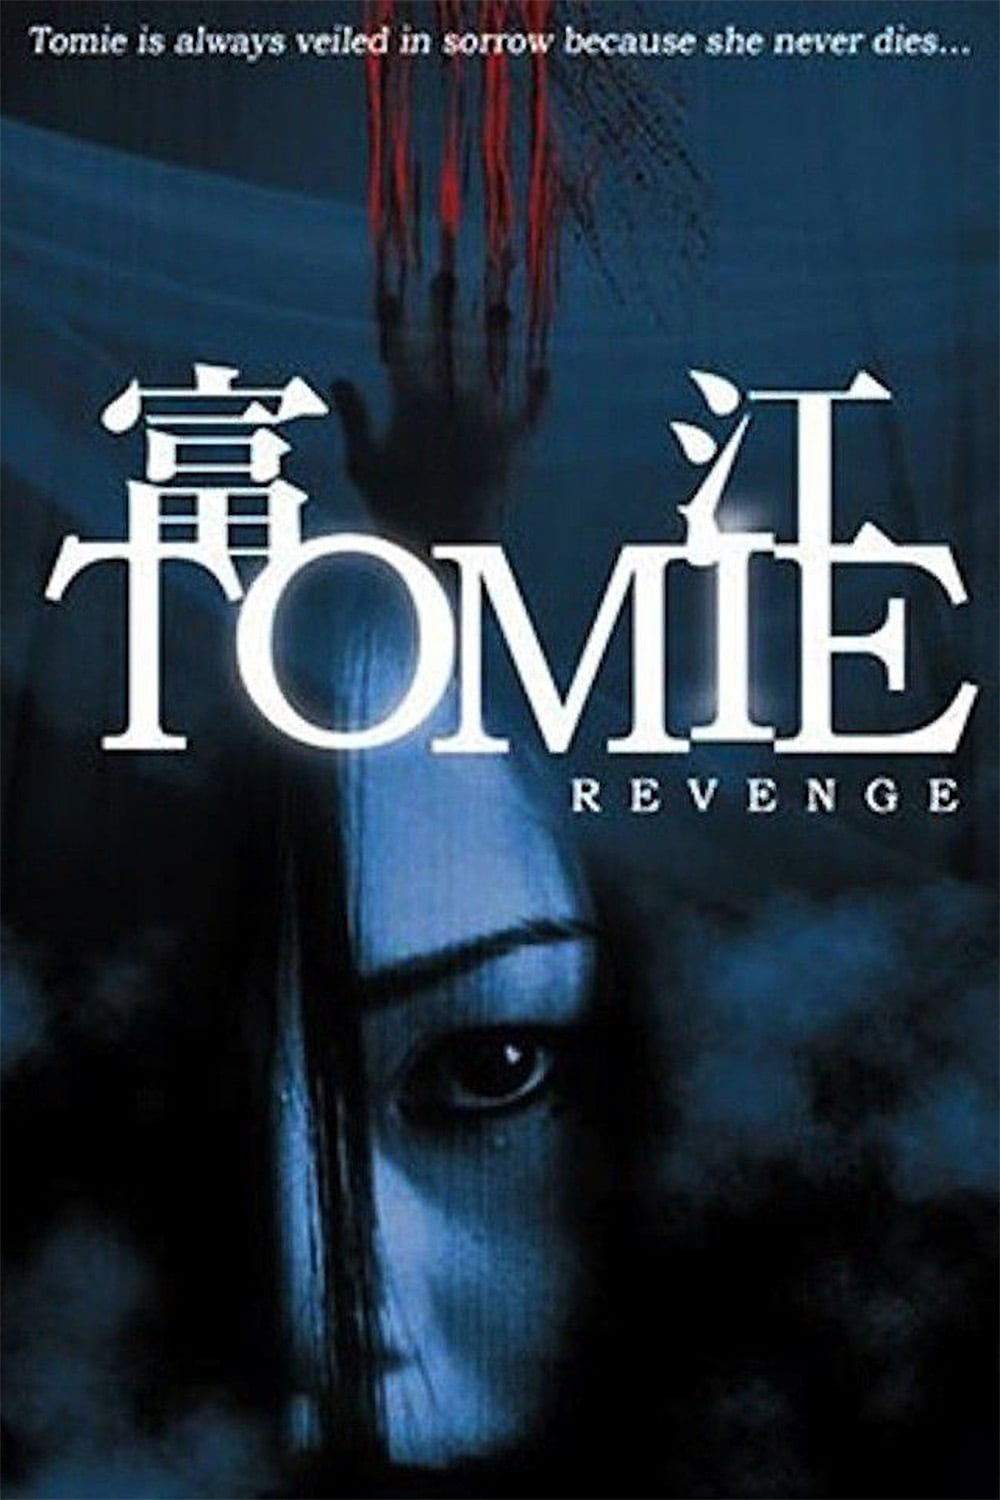 Tomie: Revenge